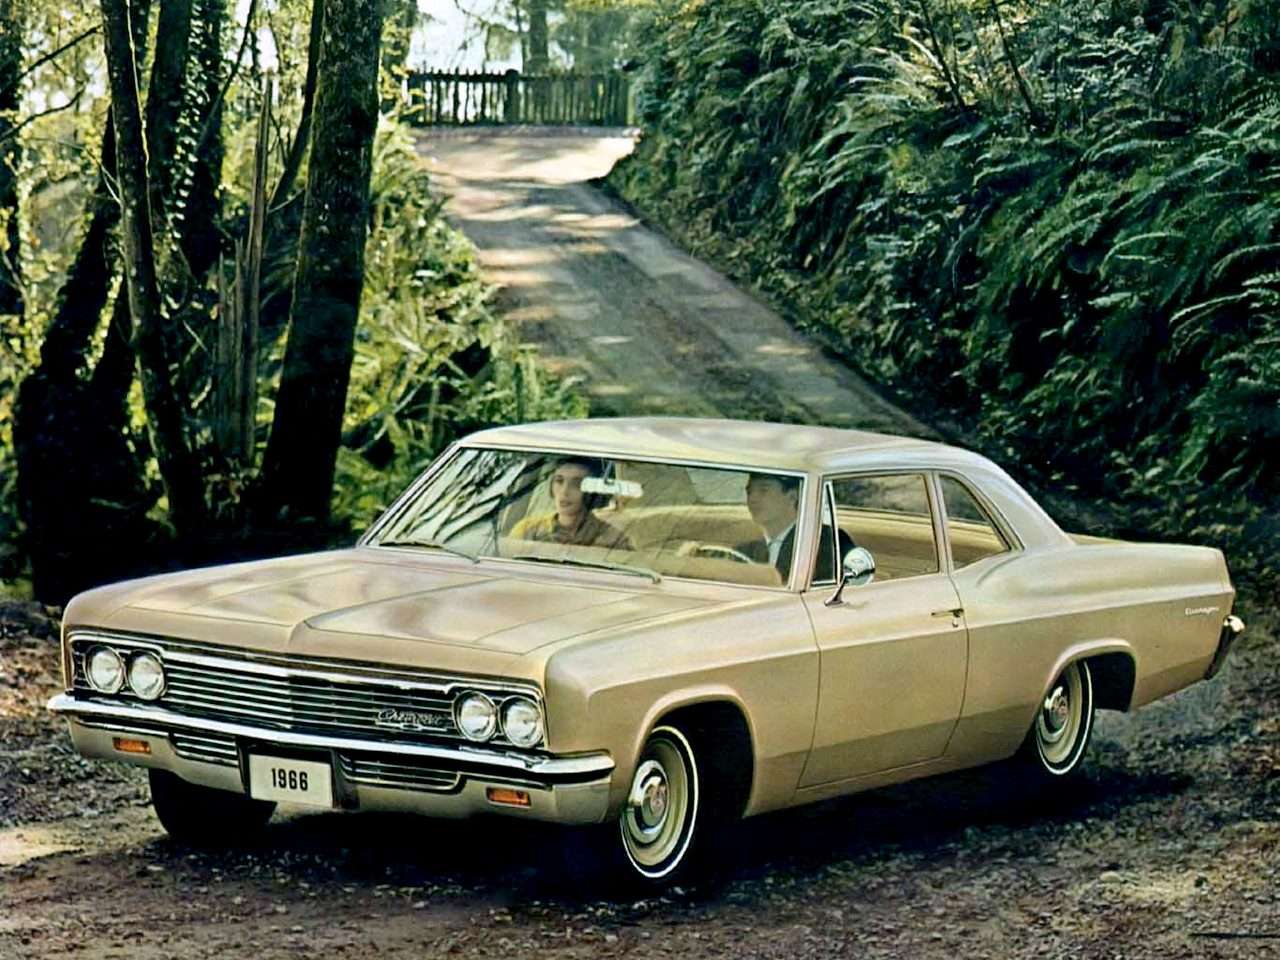 1966 Chevrolet Biscayne 2 ajtós szedán online puzzle